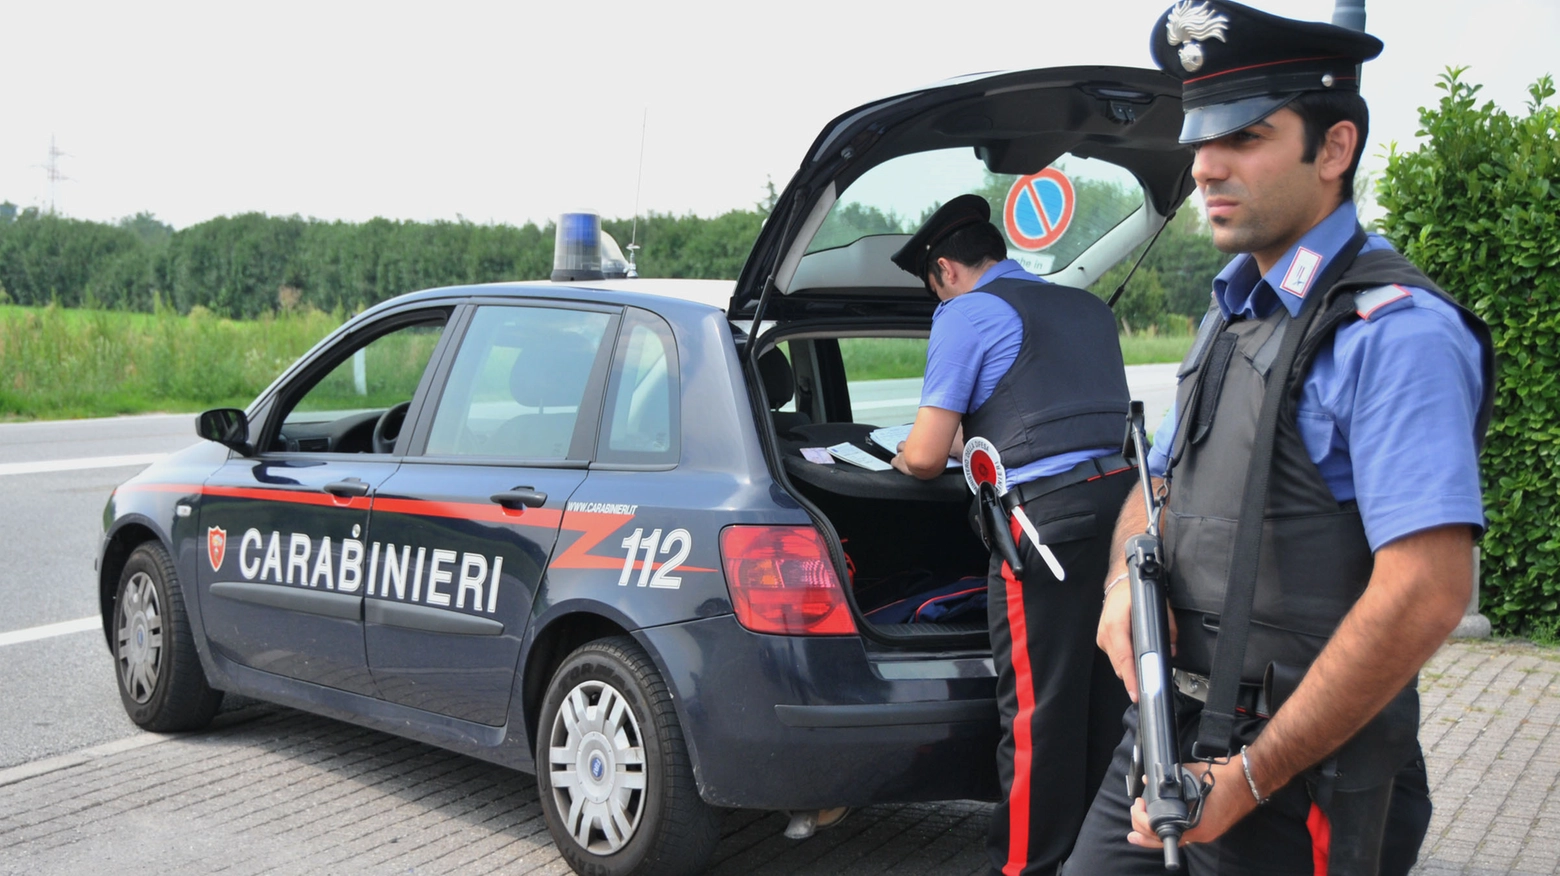 Il guidatore è apparso molto nervoso durante un controllo dei carabinieri: oltre alla droga, trovati anche 1.000 euro in contanti e una ventina di proiettili